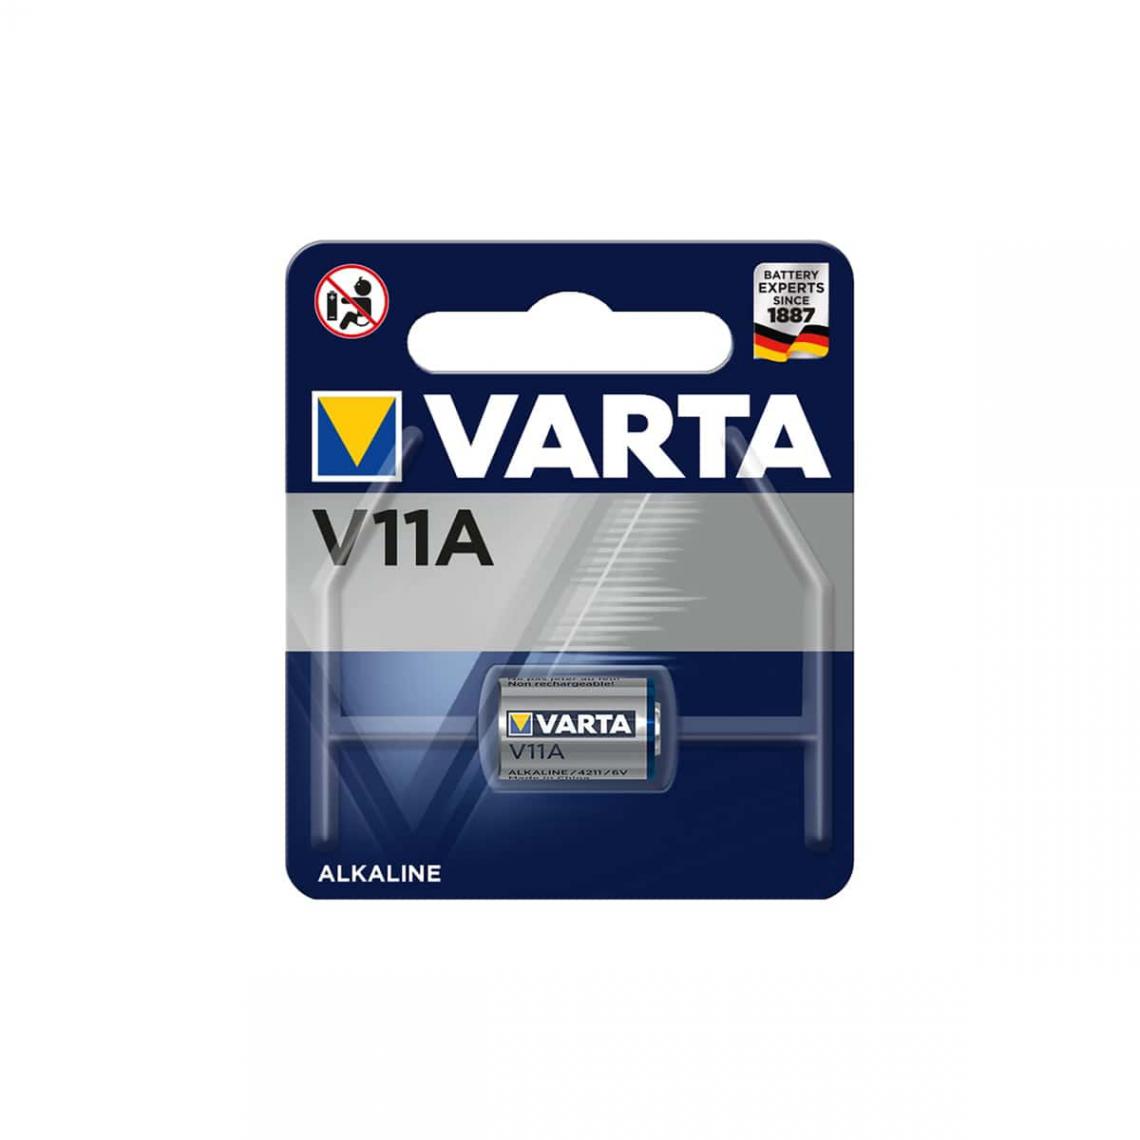 Varta - Pile Alcaline 11a Varta 4211/ - Piles spécifiques